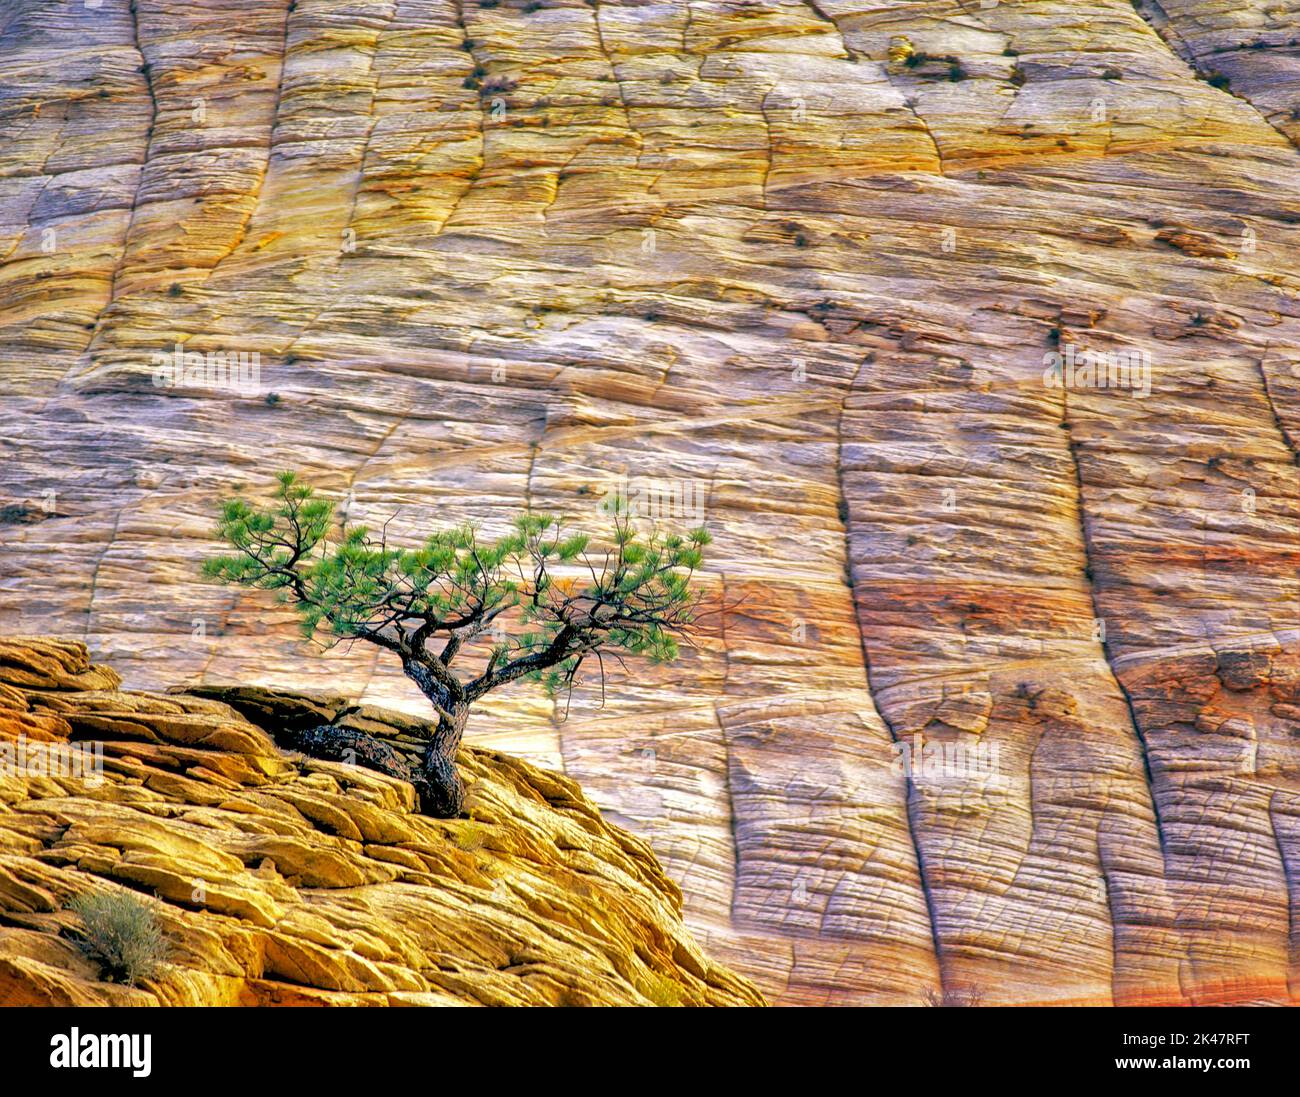 Lone Ponderosa Pine Tree dans une falaise de grès. Parc national de Zion, Utah Banque D'Images